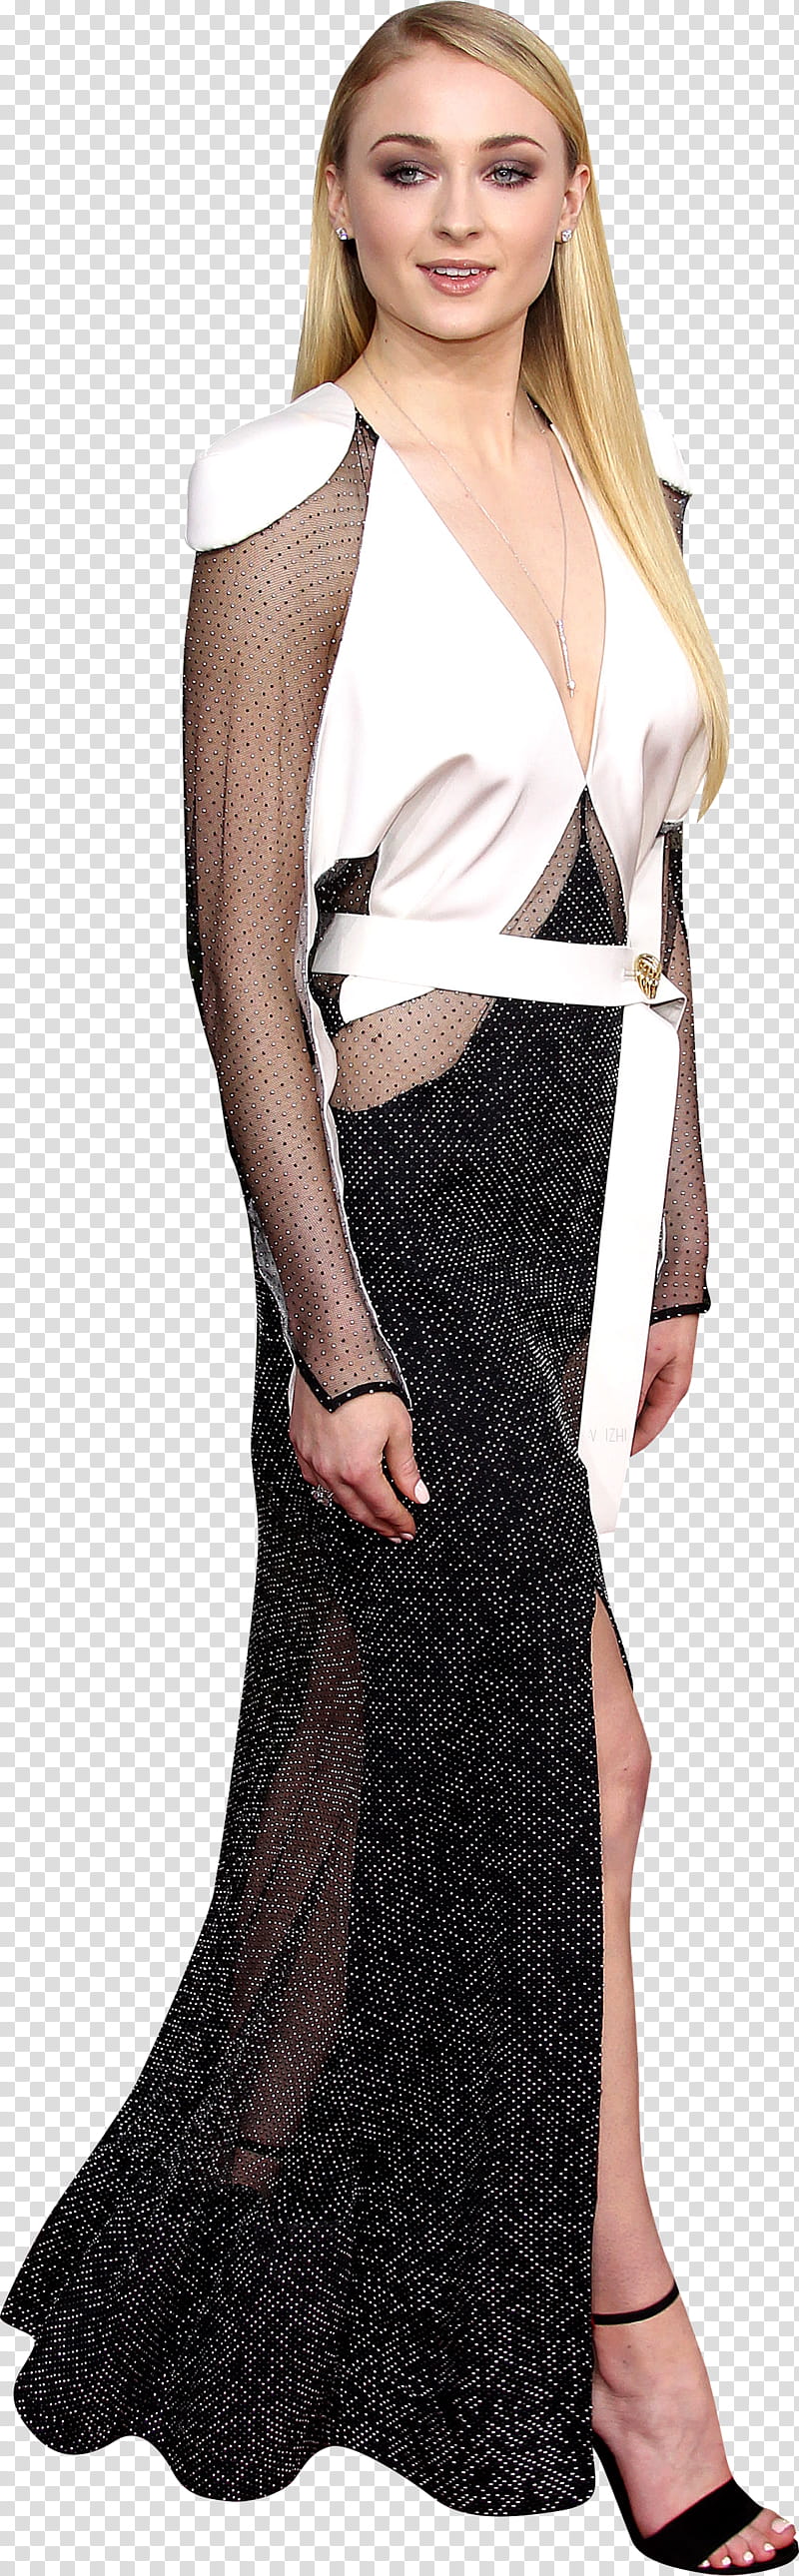 Sophie Turner transparent background PNG clipart